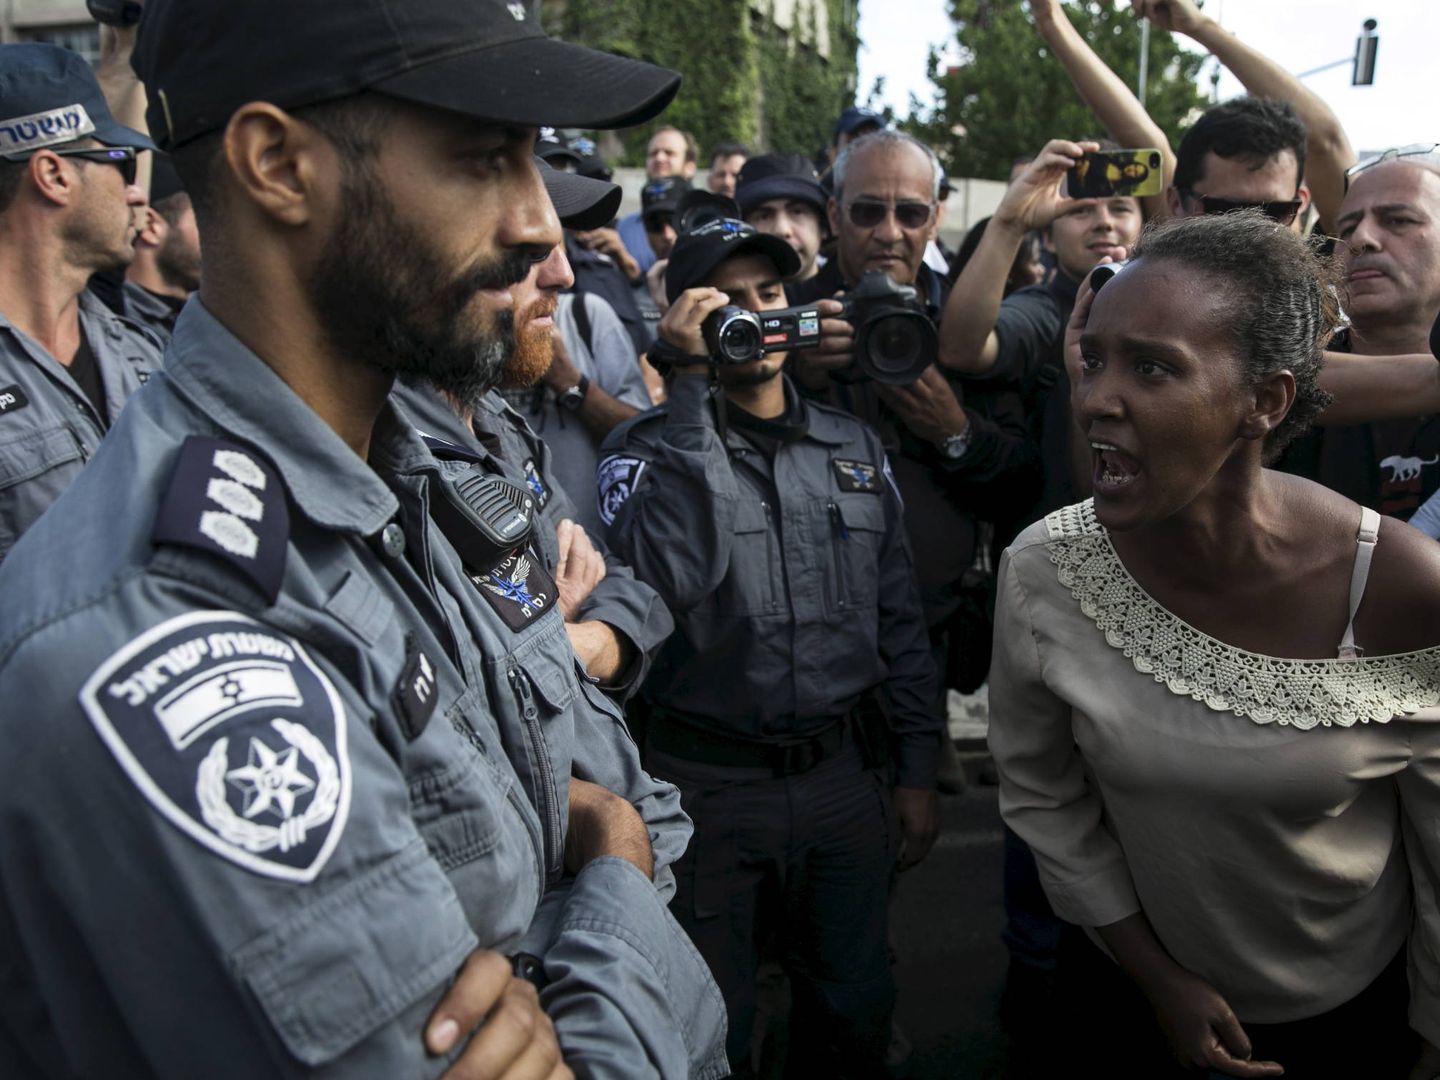 Una judía israelí de origen etíope se encara con unos agentes durante una protesta contra el racismo y la brutalidad policial, en Tel Aviv, el 3 de mayo de 2015. (Reuters)